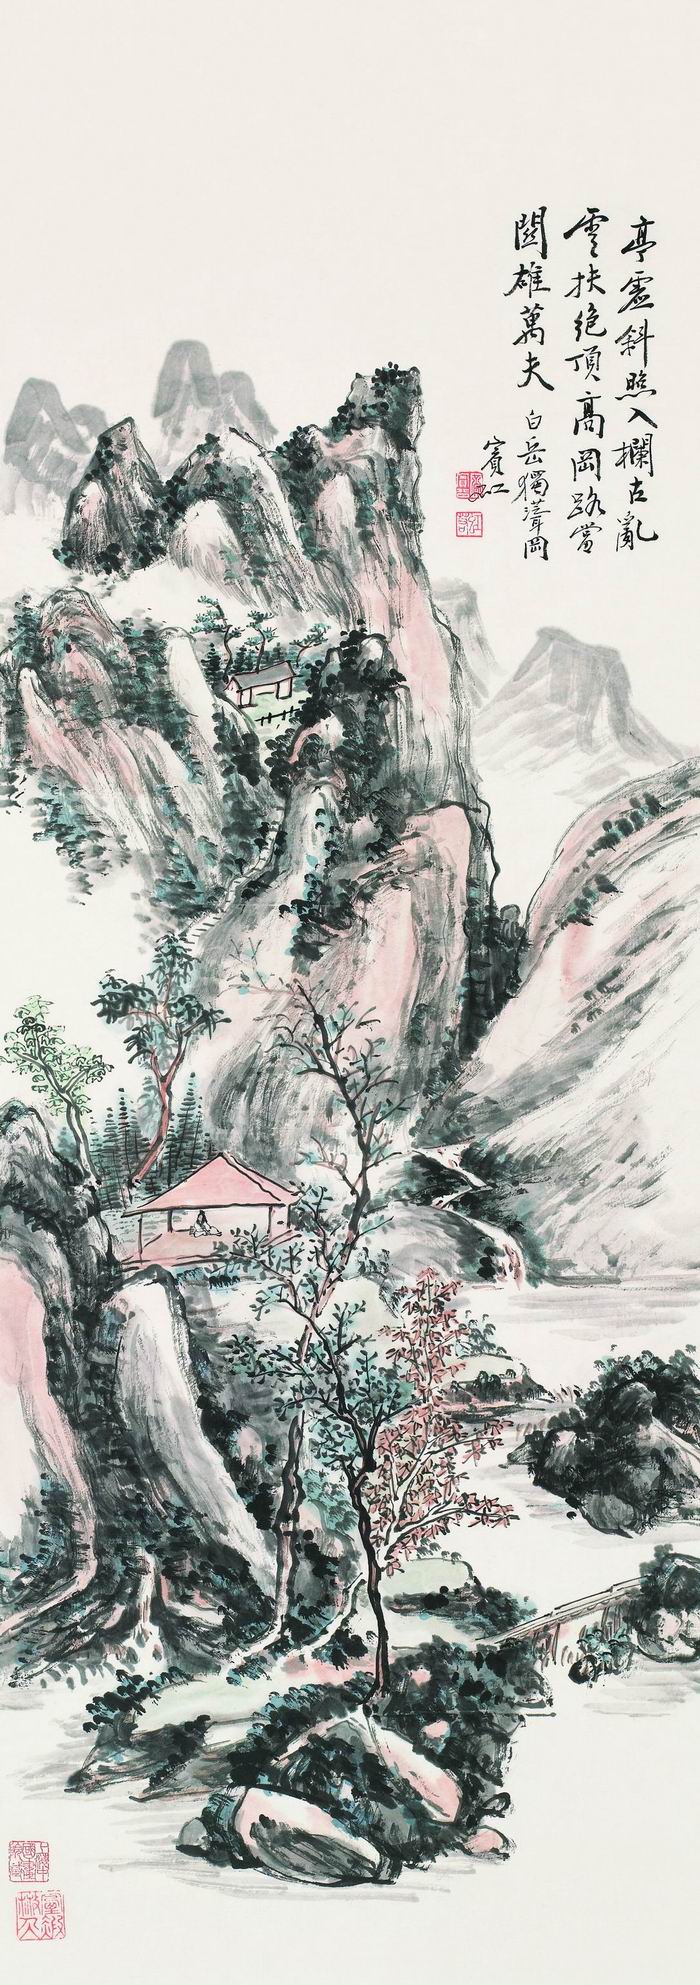 黄宾虹，《白岳独峰岗》，纸本设色立轴，111.5×40cm，上海中国画院藏